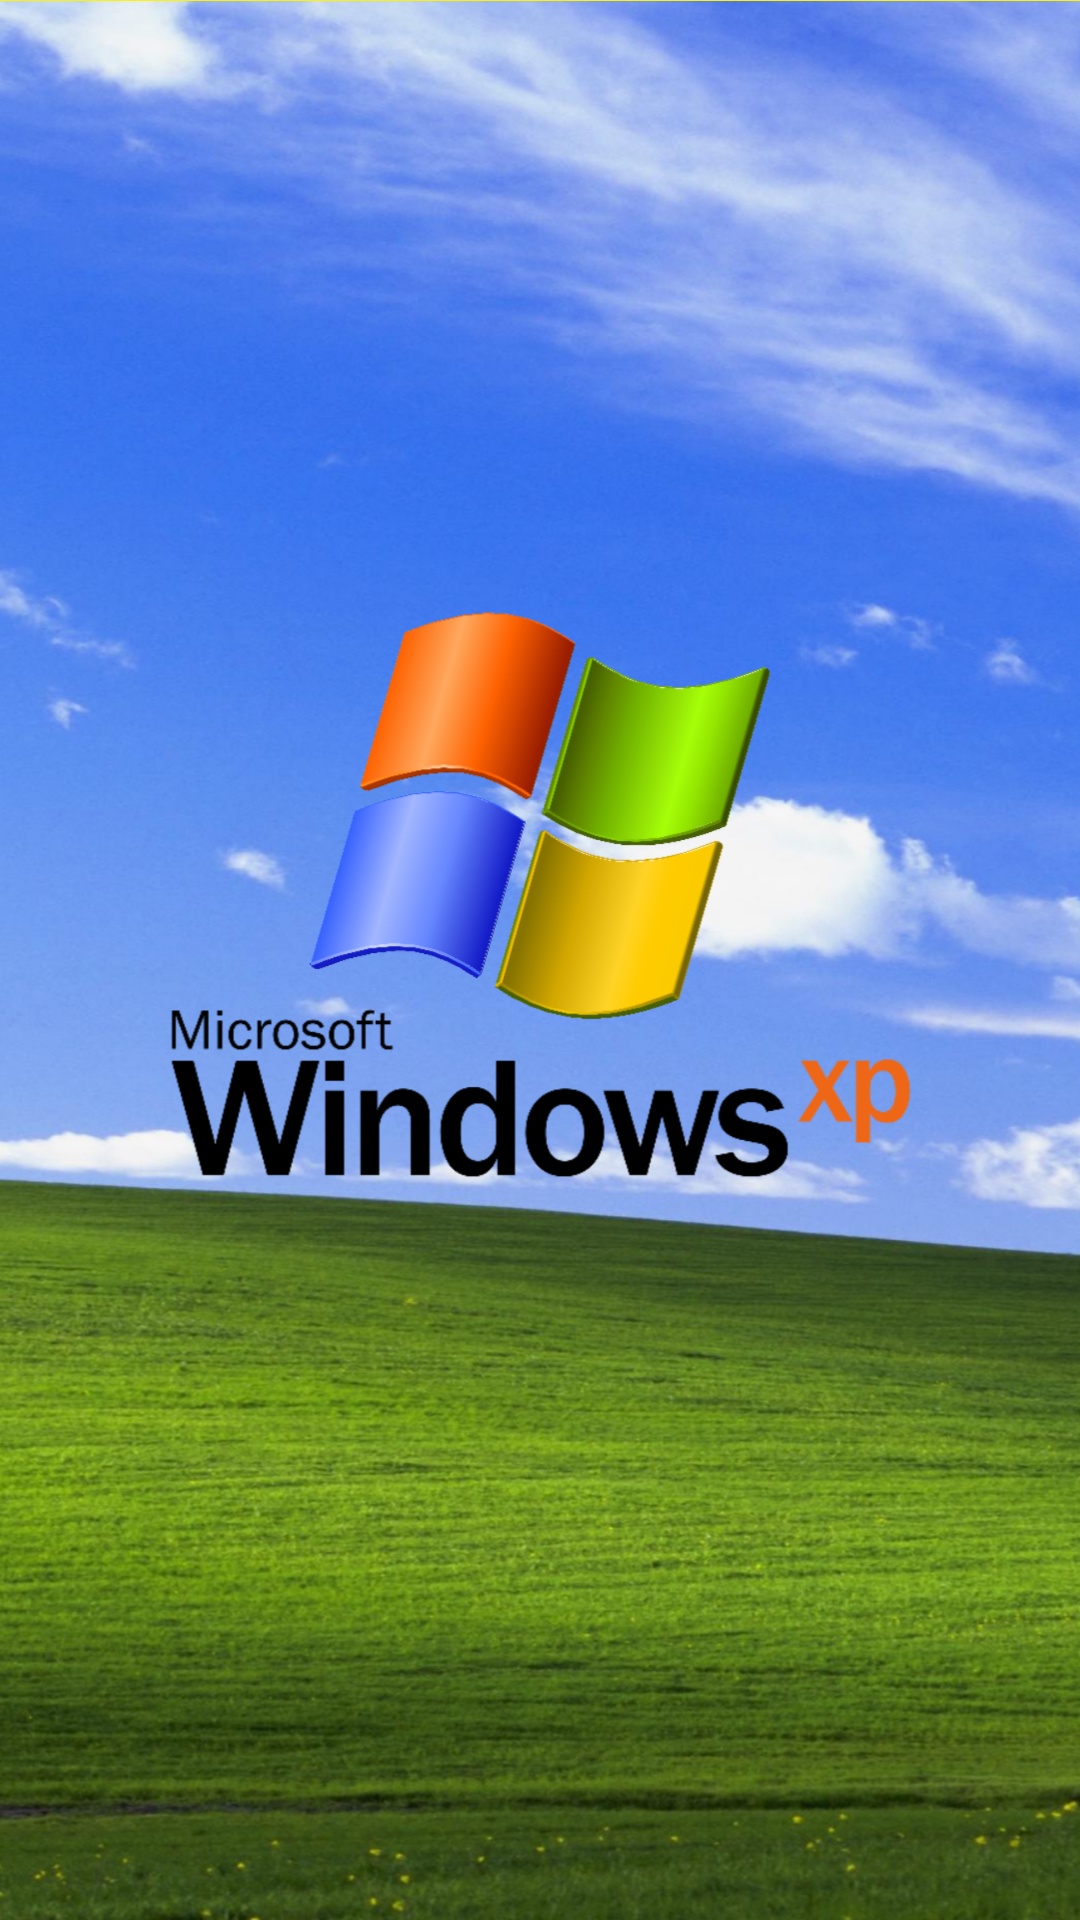 XP  Windows xp hình nền 26985988  fanpop